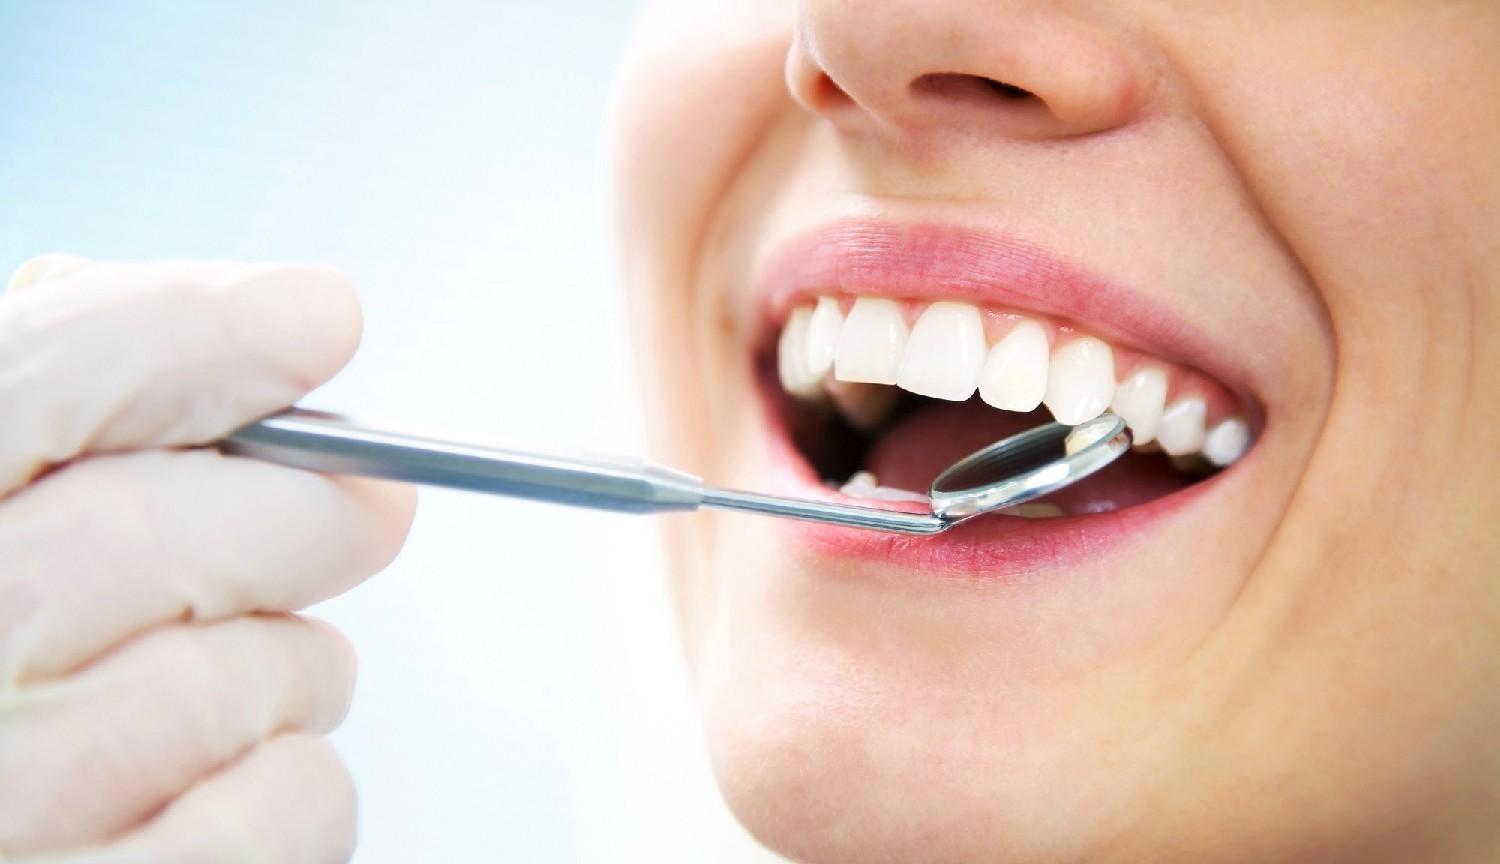 Kompletná dentálna hygiena - Vyčistenie zubného kameňa+pieskovanie+fluoridácia+nácvik správnej techniky čistenia+výber zubnej pomôcky